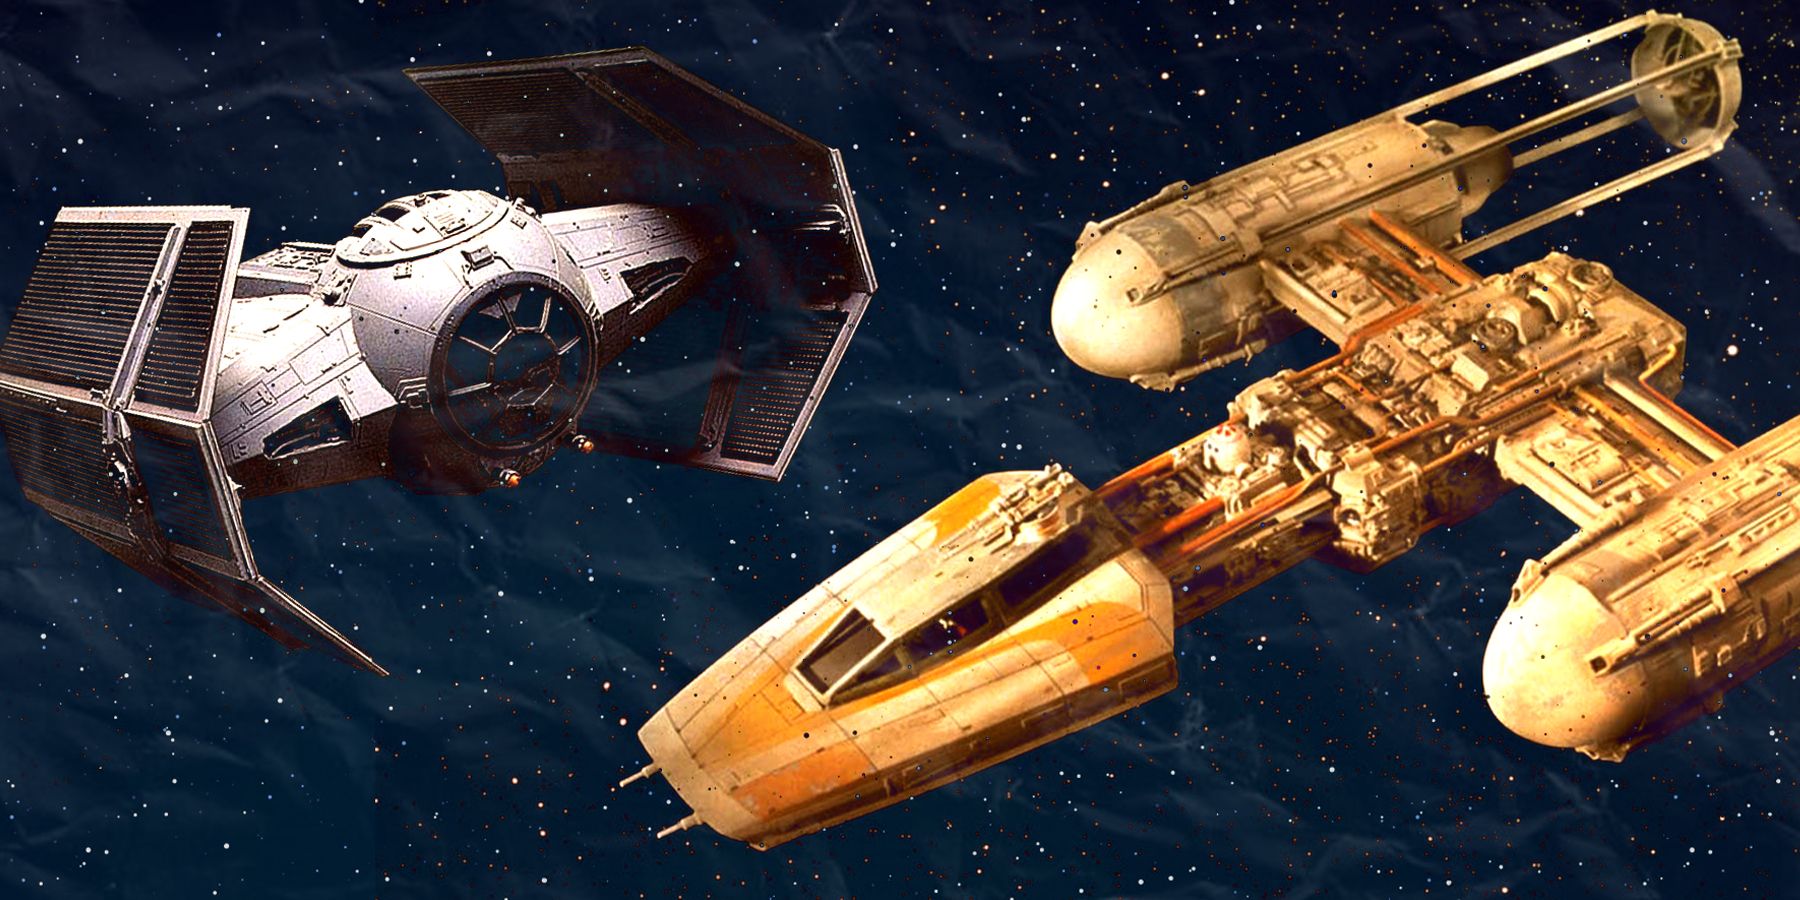 20 Best Starfighter Designs In Star Wars, Ranked